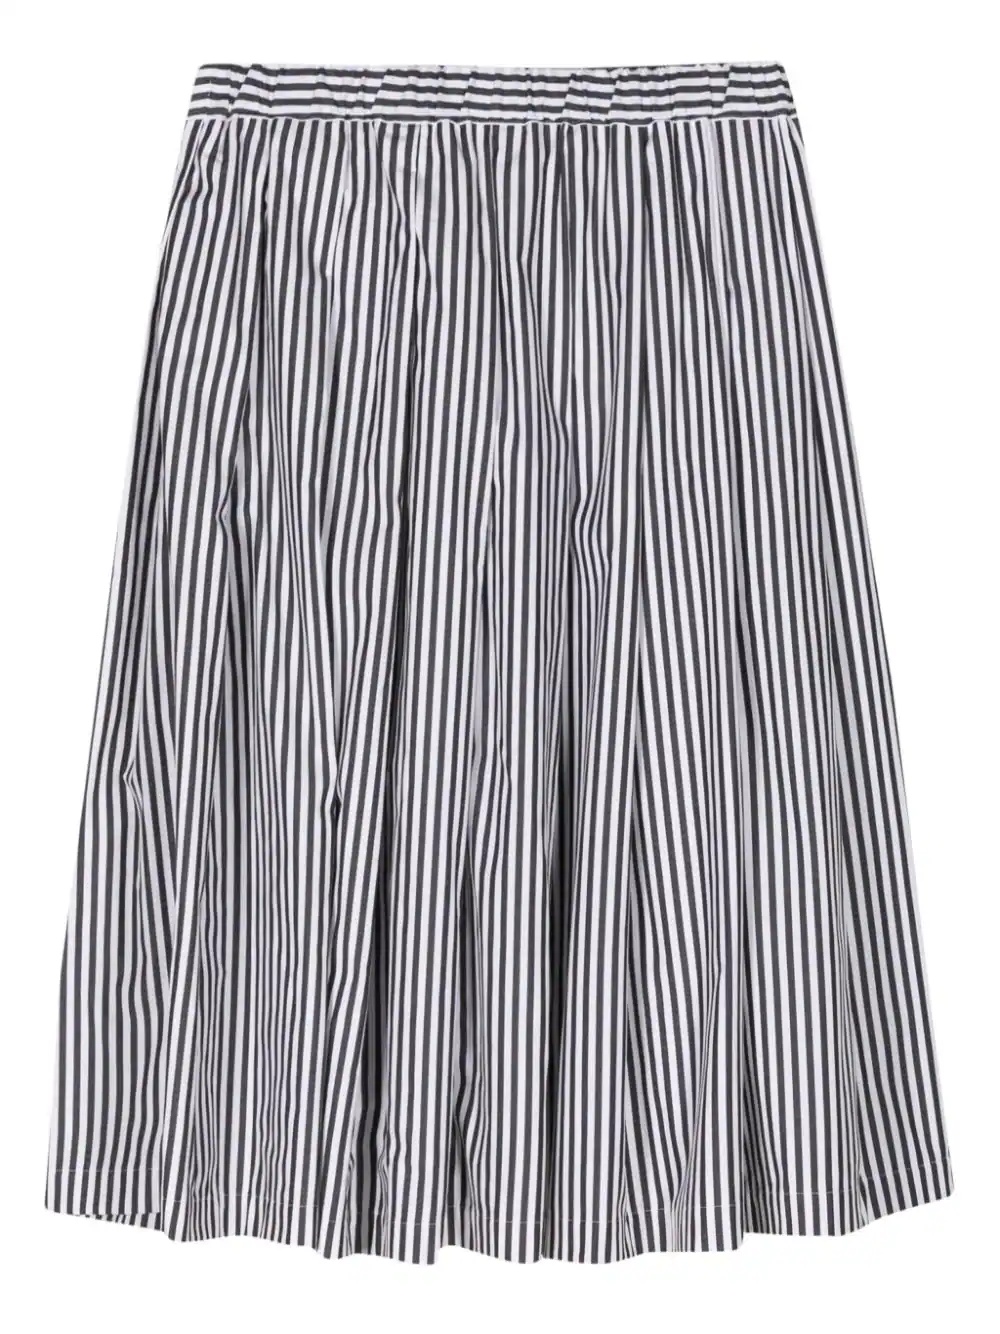 Stripe Pleated Skirt - 2